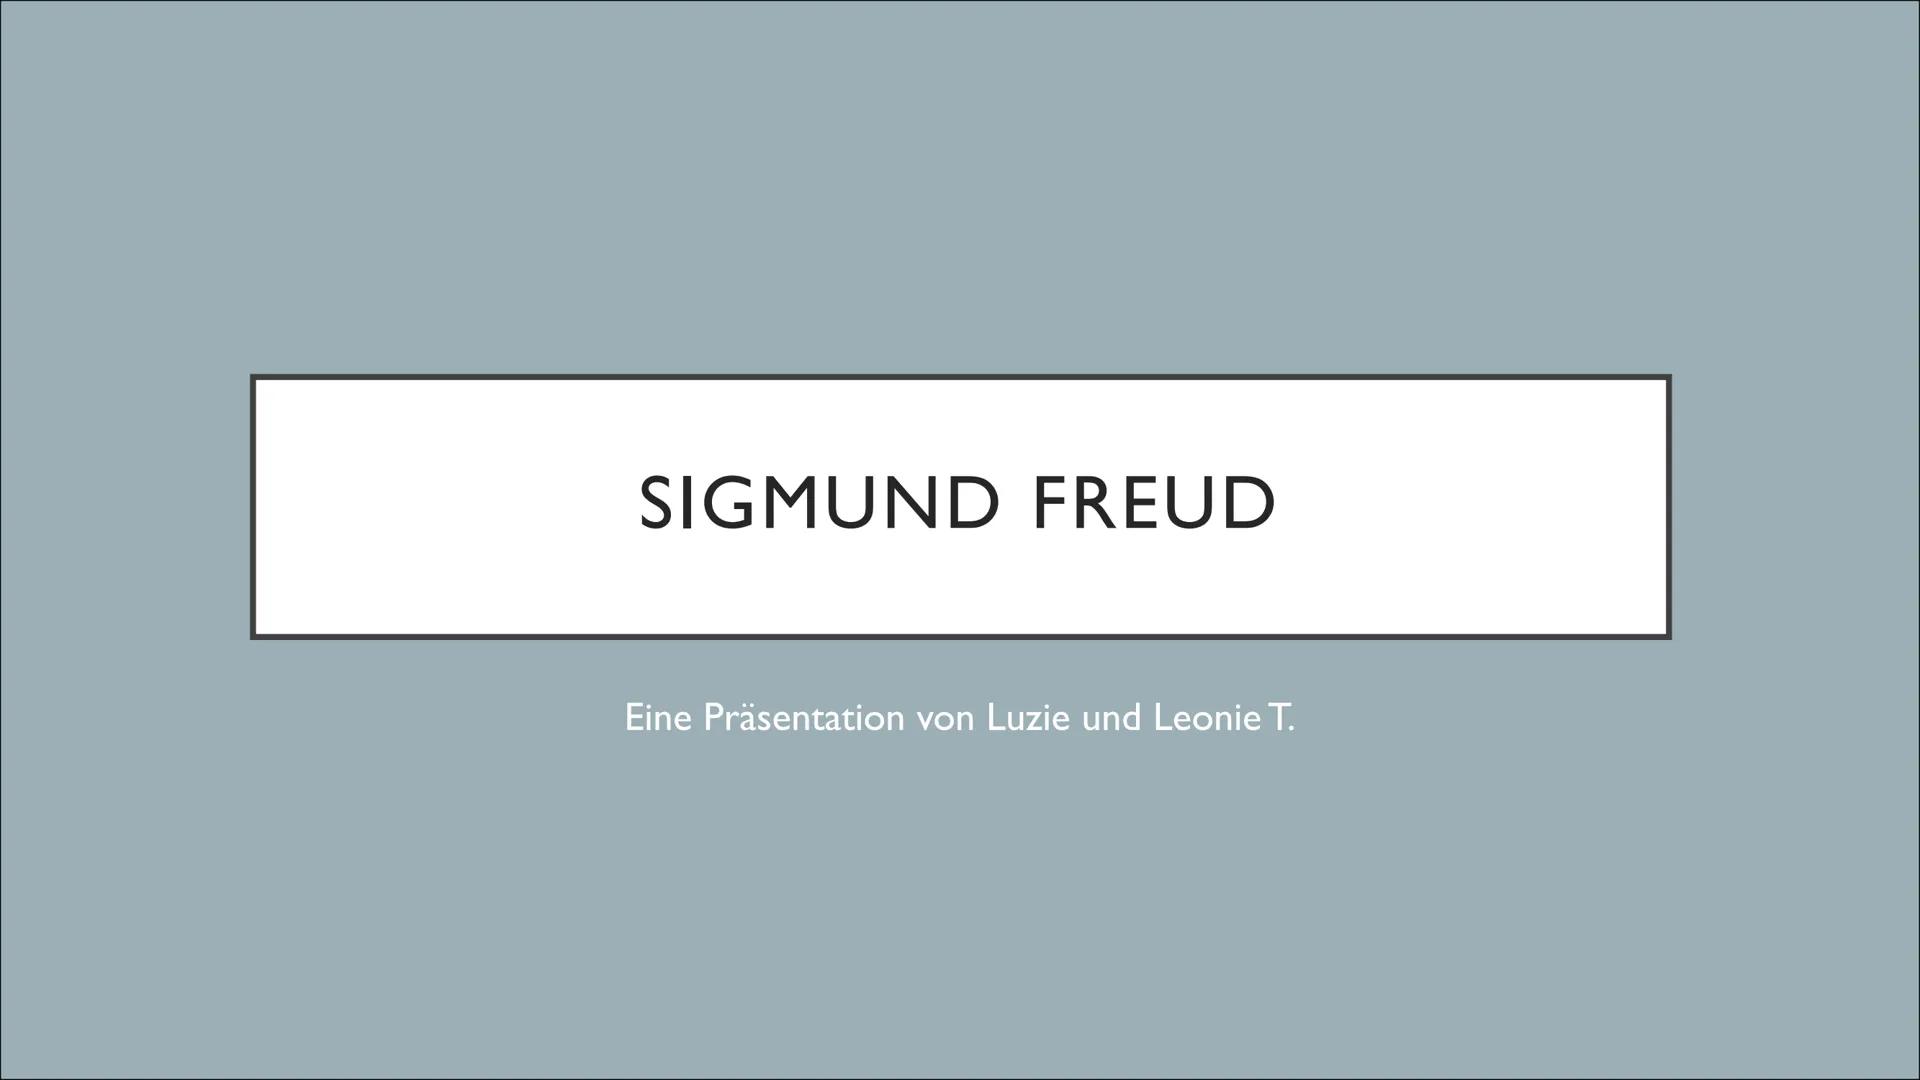 SIGMUND FREUD
Eine Präsentation von Luzie und Leonie T. 1) Kurzbiografie
a) Wer war Sigmund Freud?
b) Kindheit und Ausbildung
c) Akademische